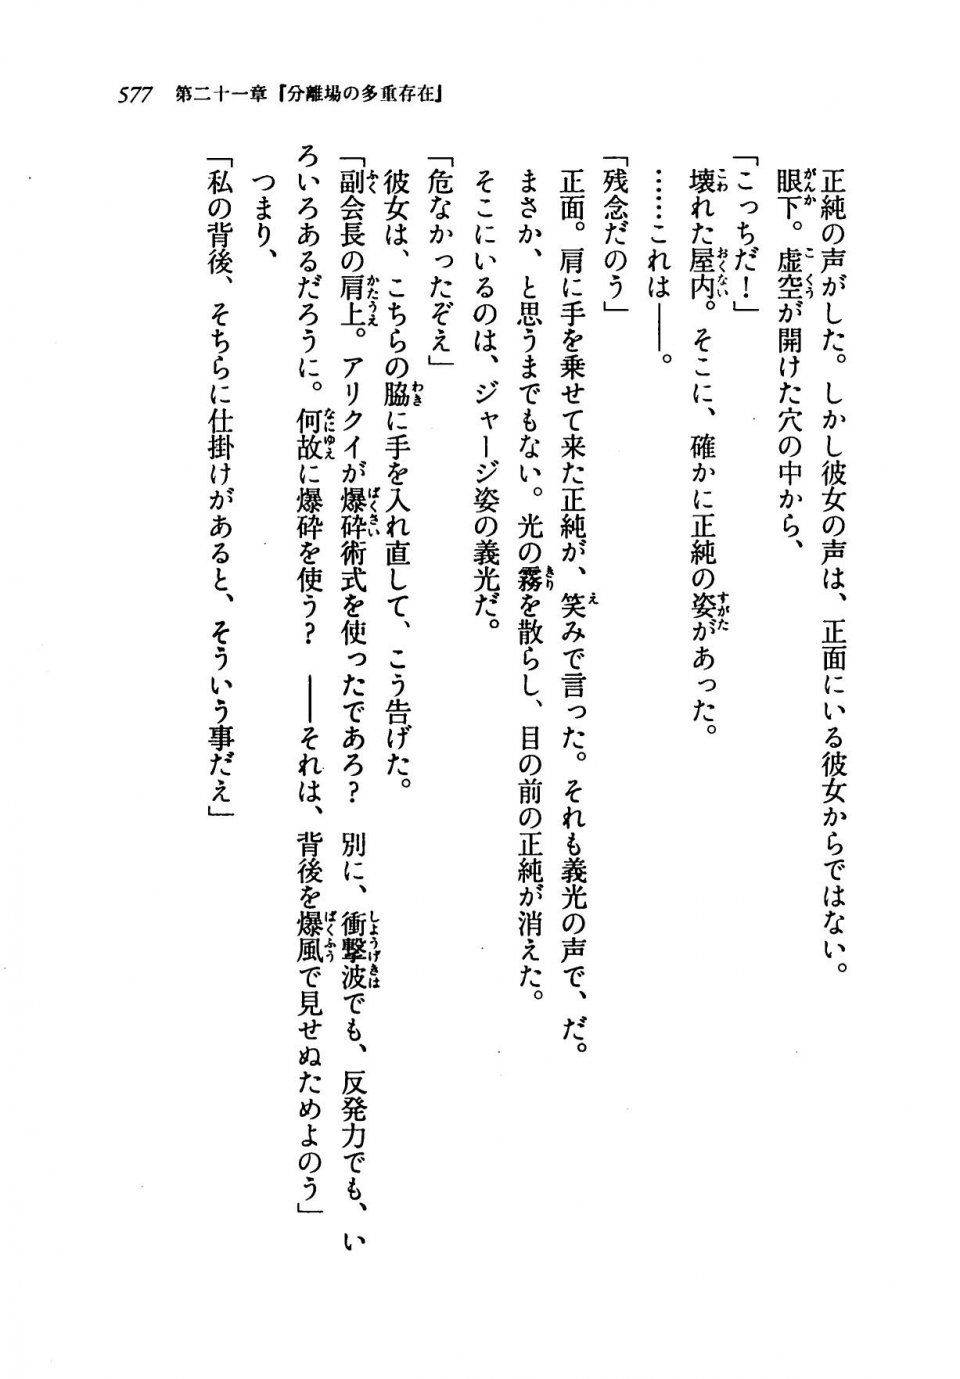 Kyoukai Senjou no Horizon LN Vol 19(8A) - Photo #577